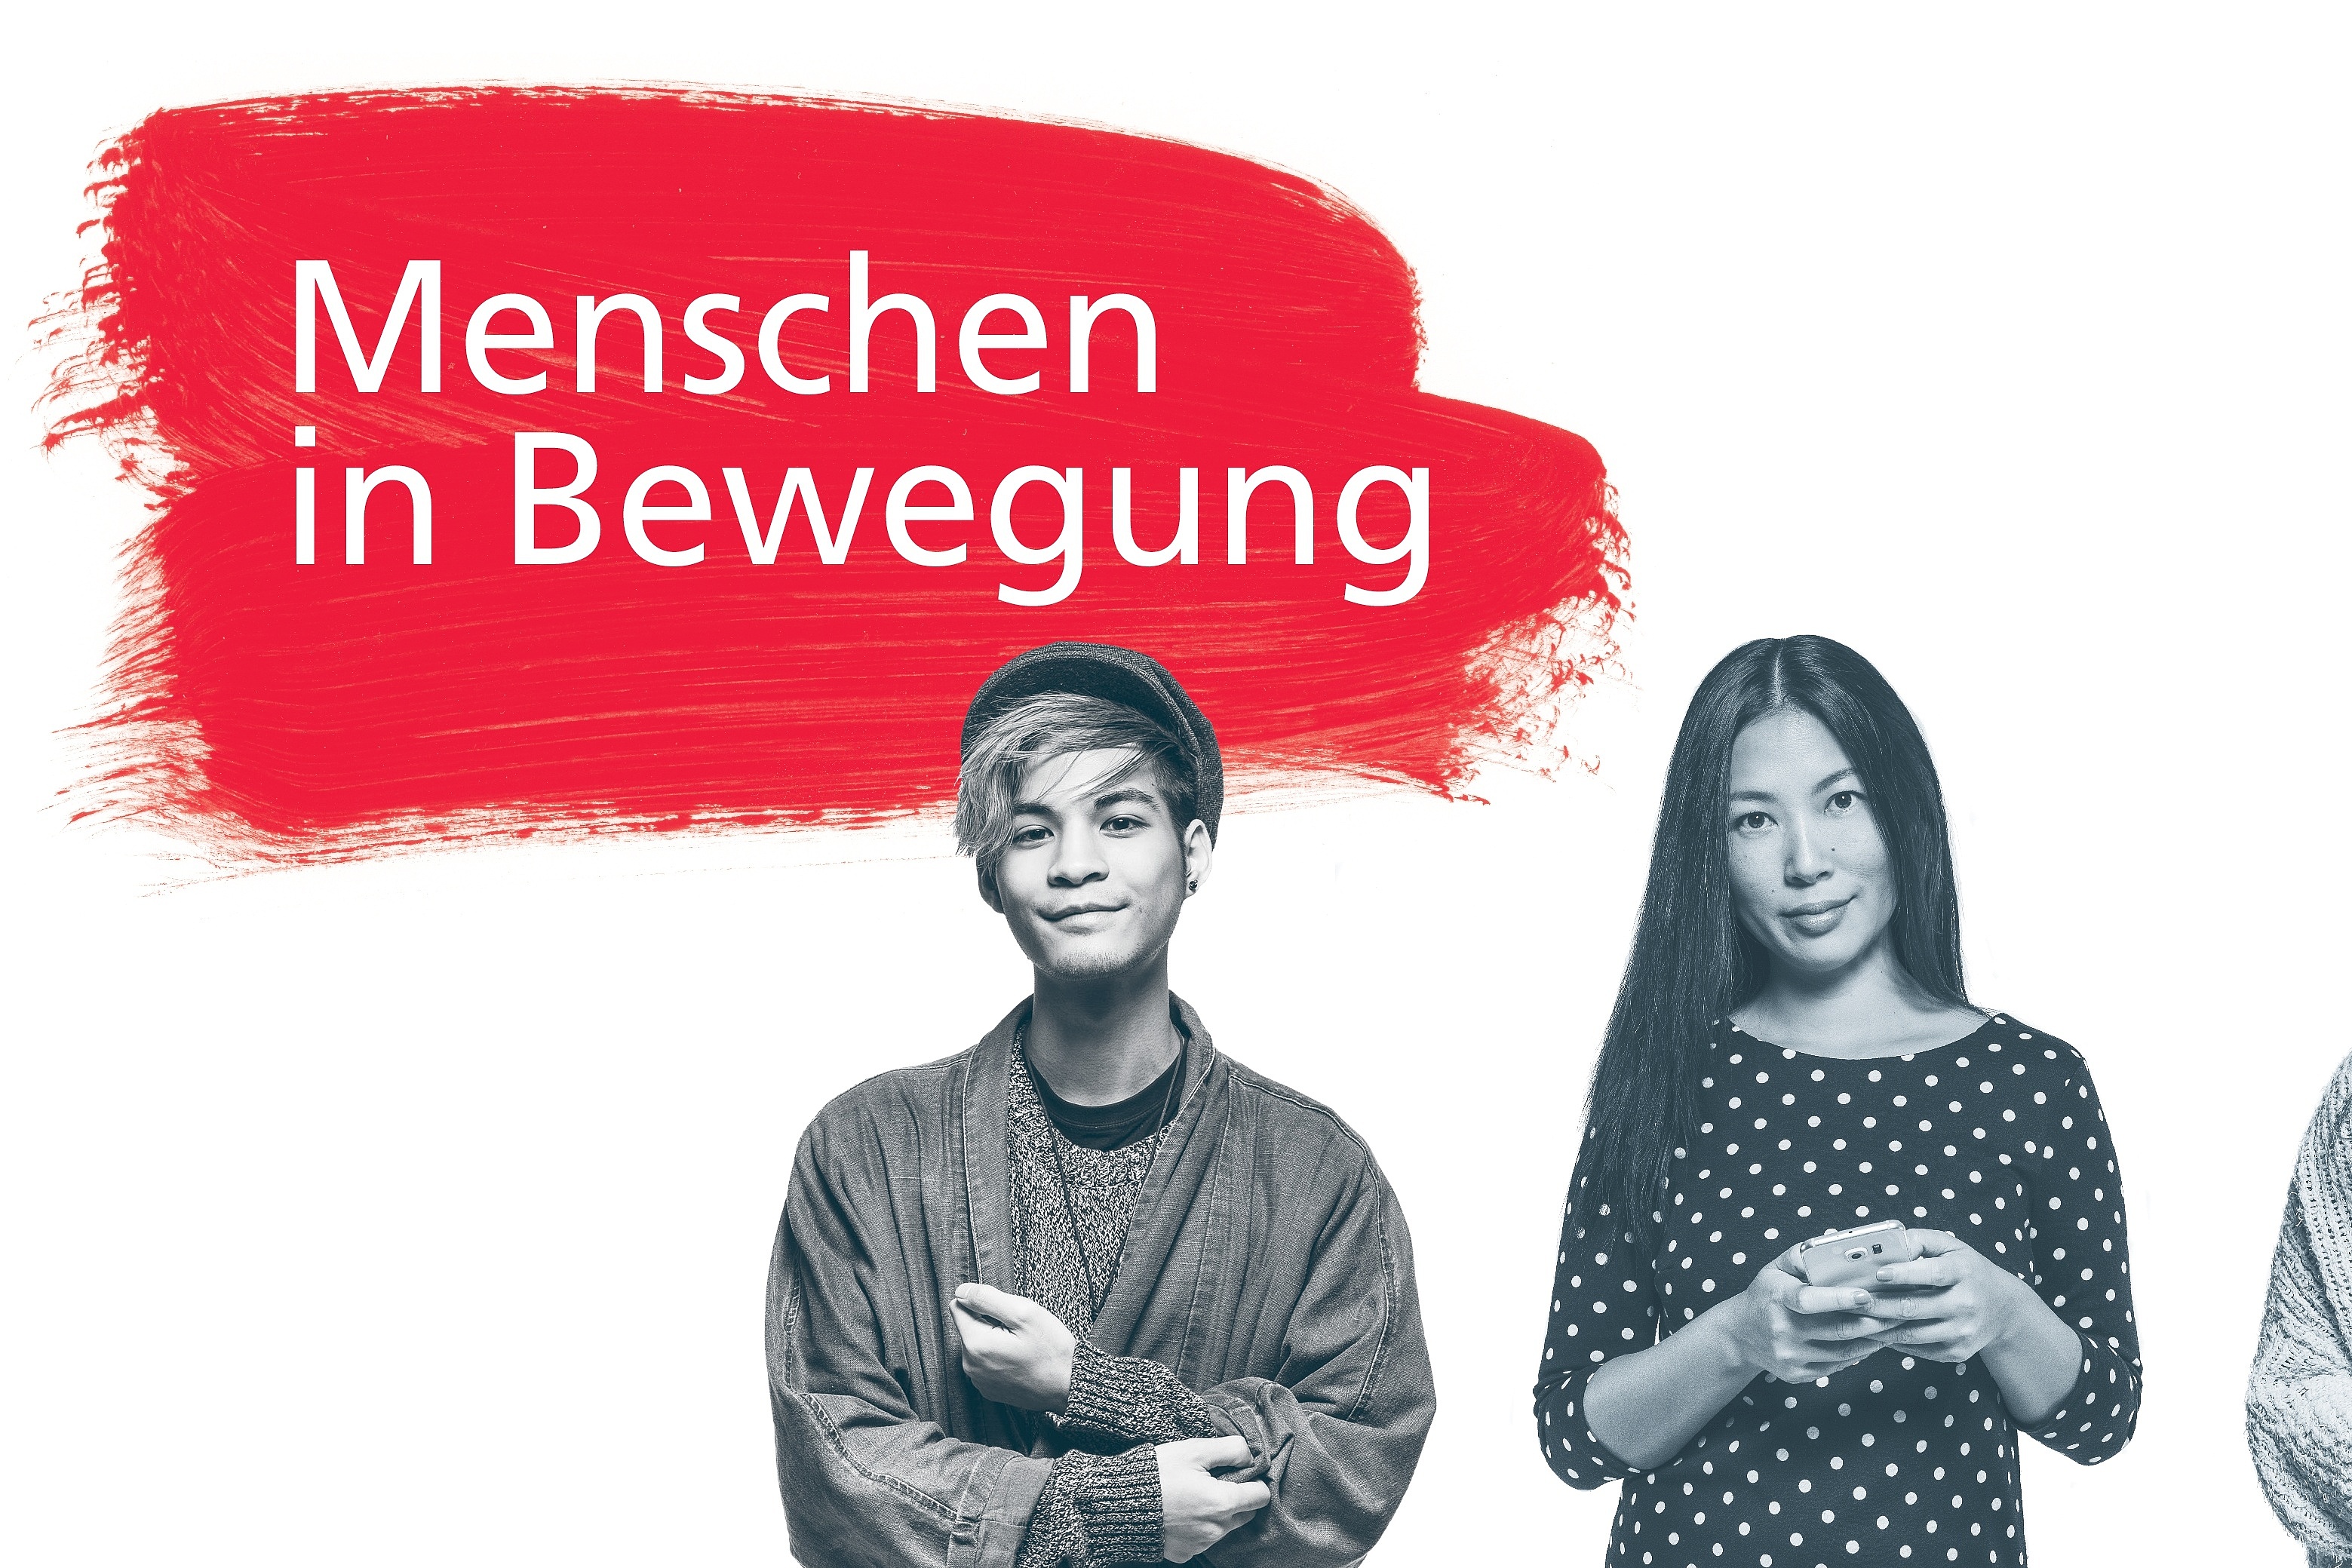 Junge Erwachsene erklären etwas mit freundlichen Gesichtern. Die Fotos sind in schwarz-weiß. Links ein roter Farbklecks, auf dem in weißer Farbe steht "Menschen in Bewegung". Rechts das Logo der Friedrich-Ebert-Stiftung.